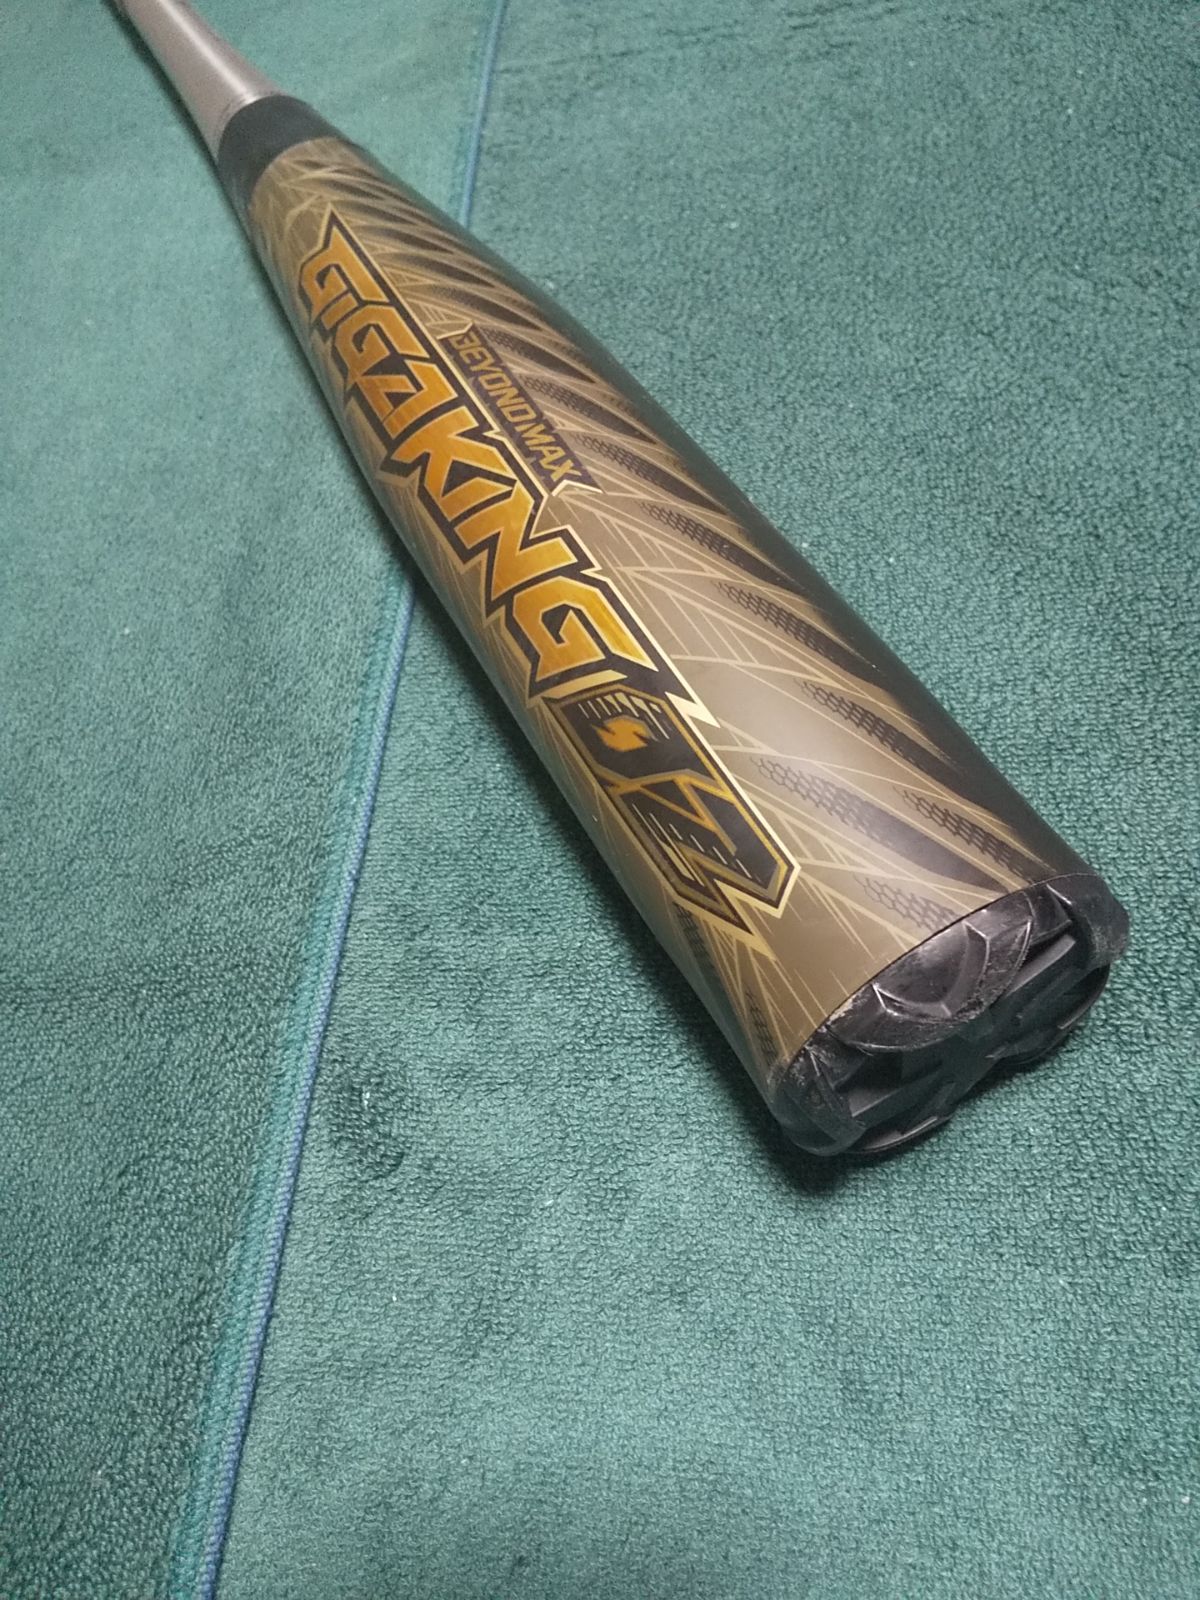 ビヨンドマックス ギガキング02 GIGAKING02 84cm 730g - 野球